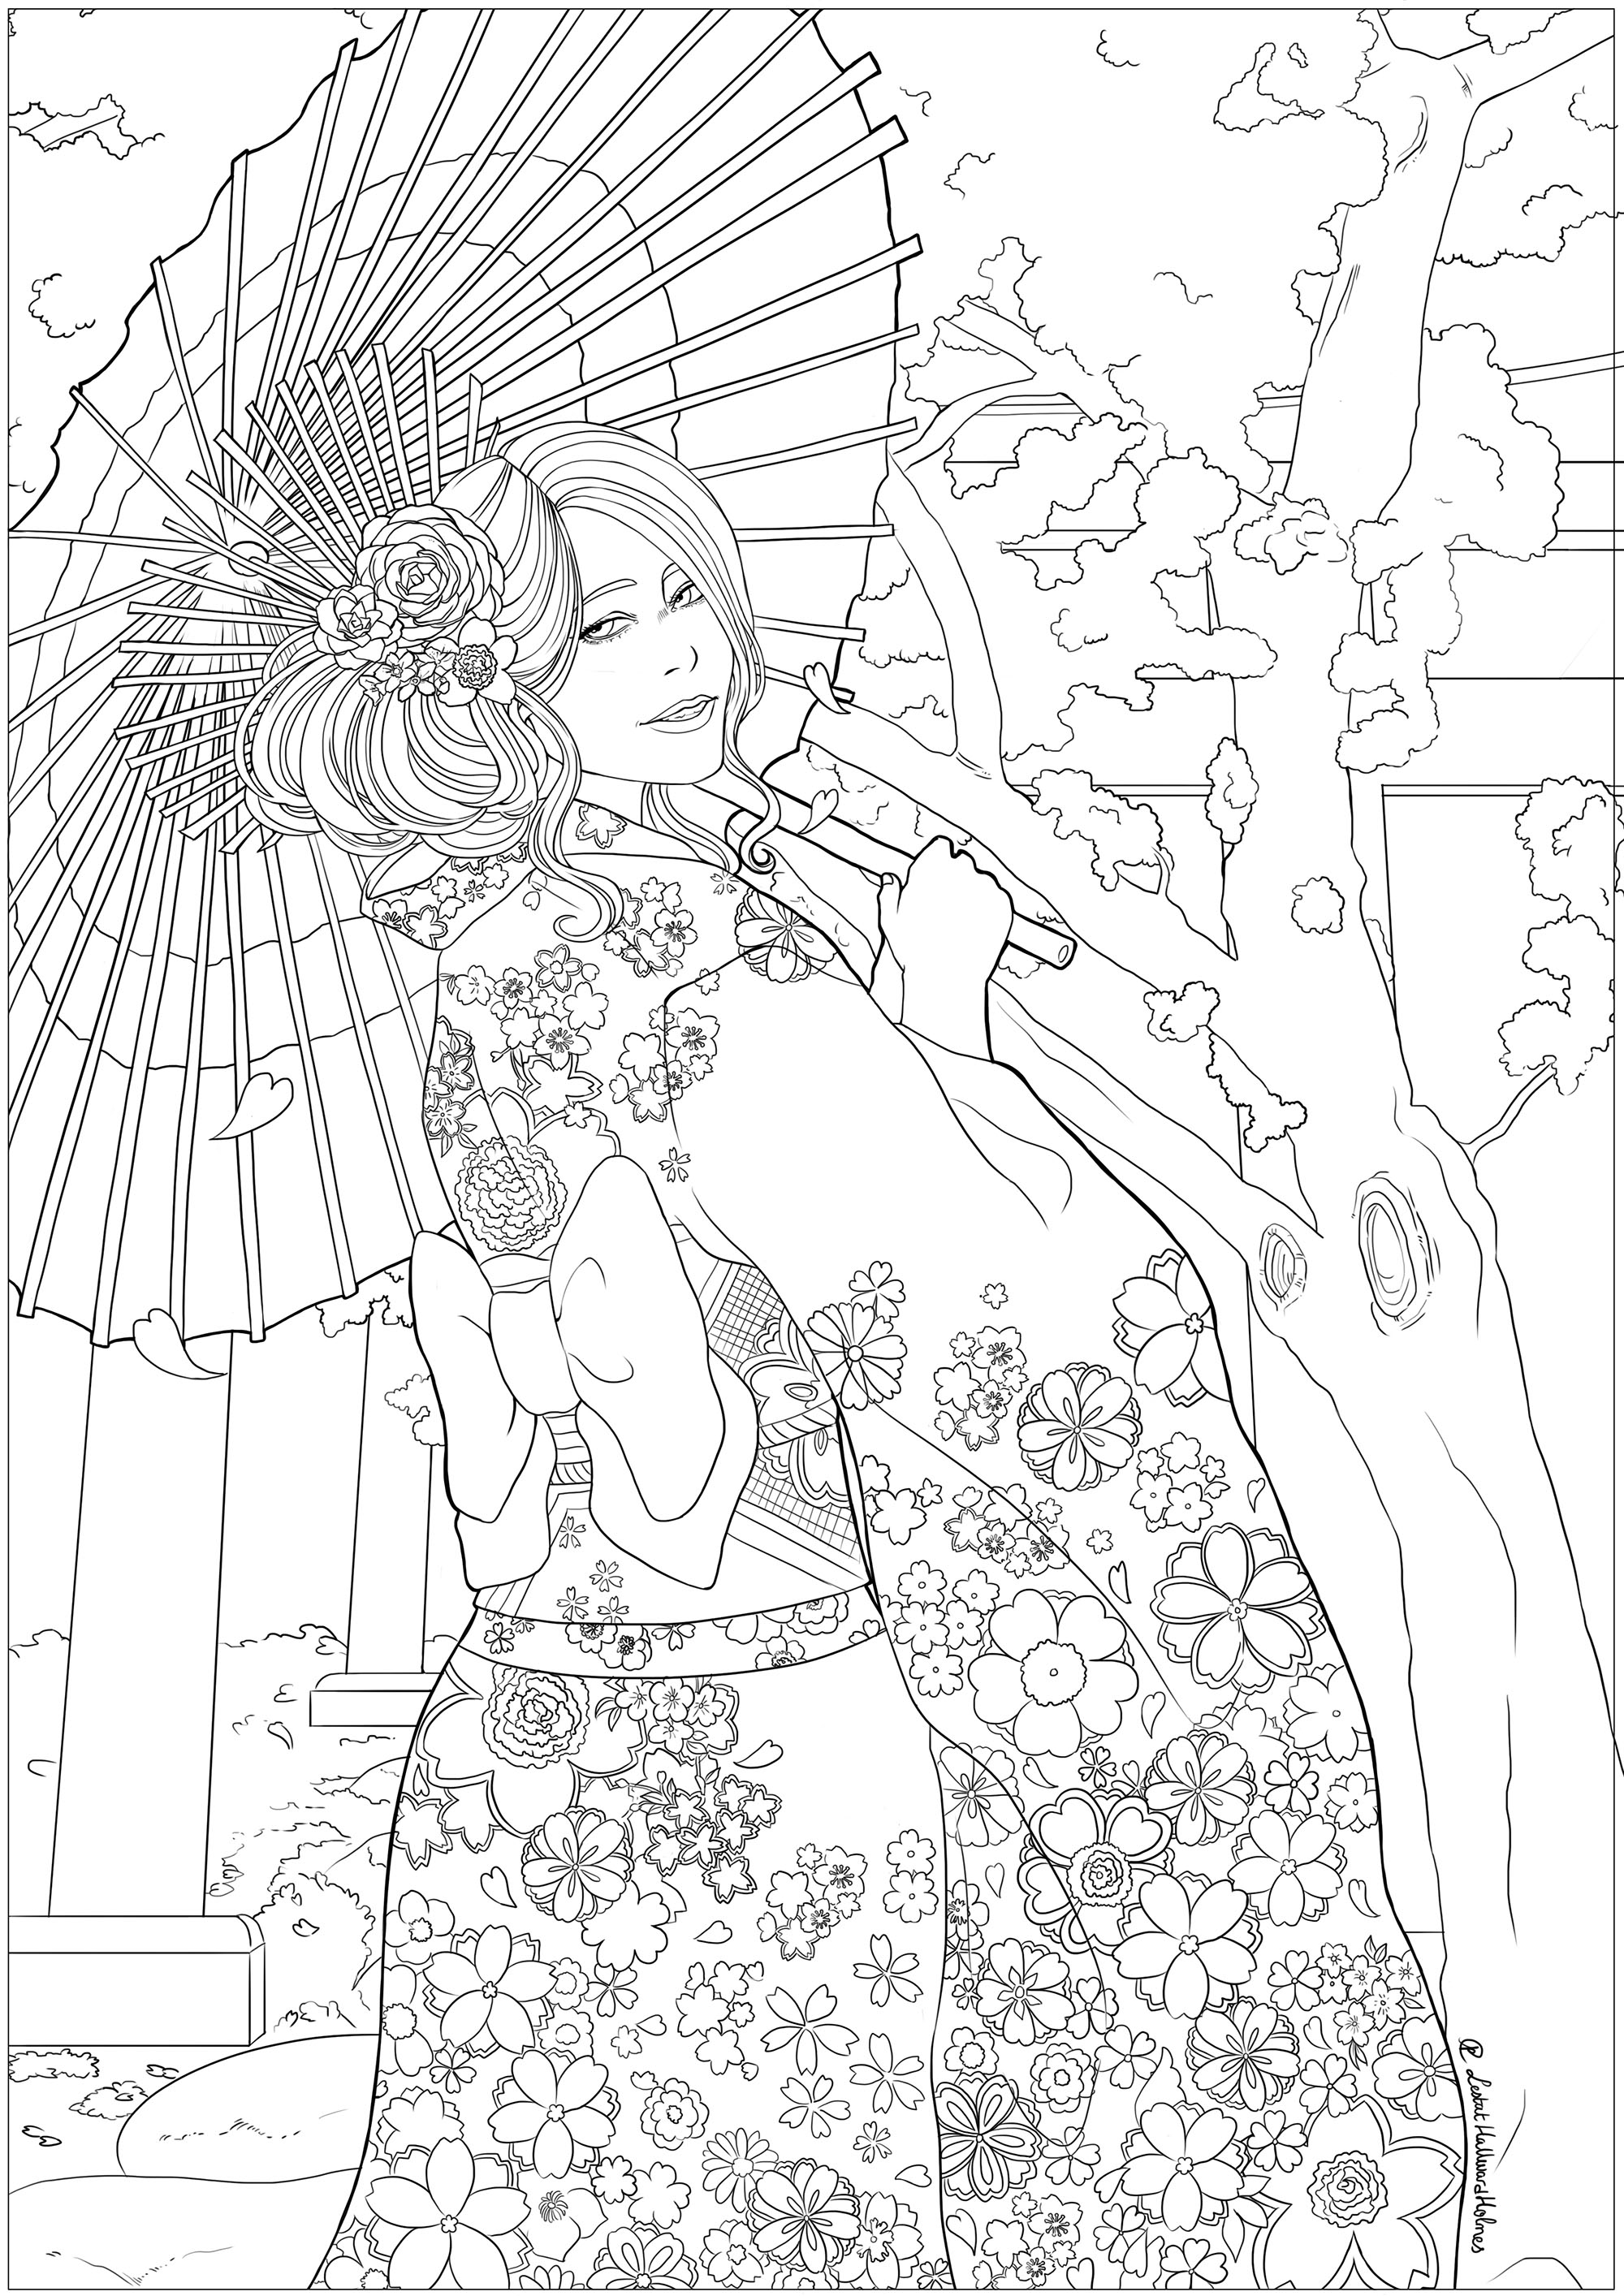 Una elegante joven delante de un templo y cerezos en flor, con su mejor yukata. Dibujo para celebrar el Hanami, la fiesta japonesa de la primavera.